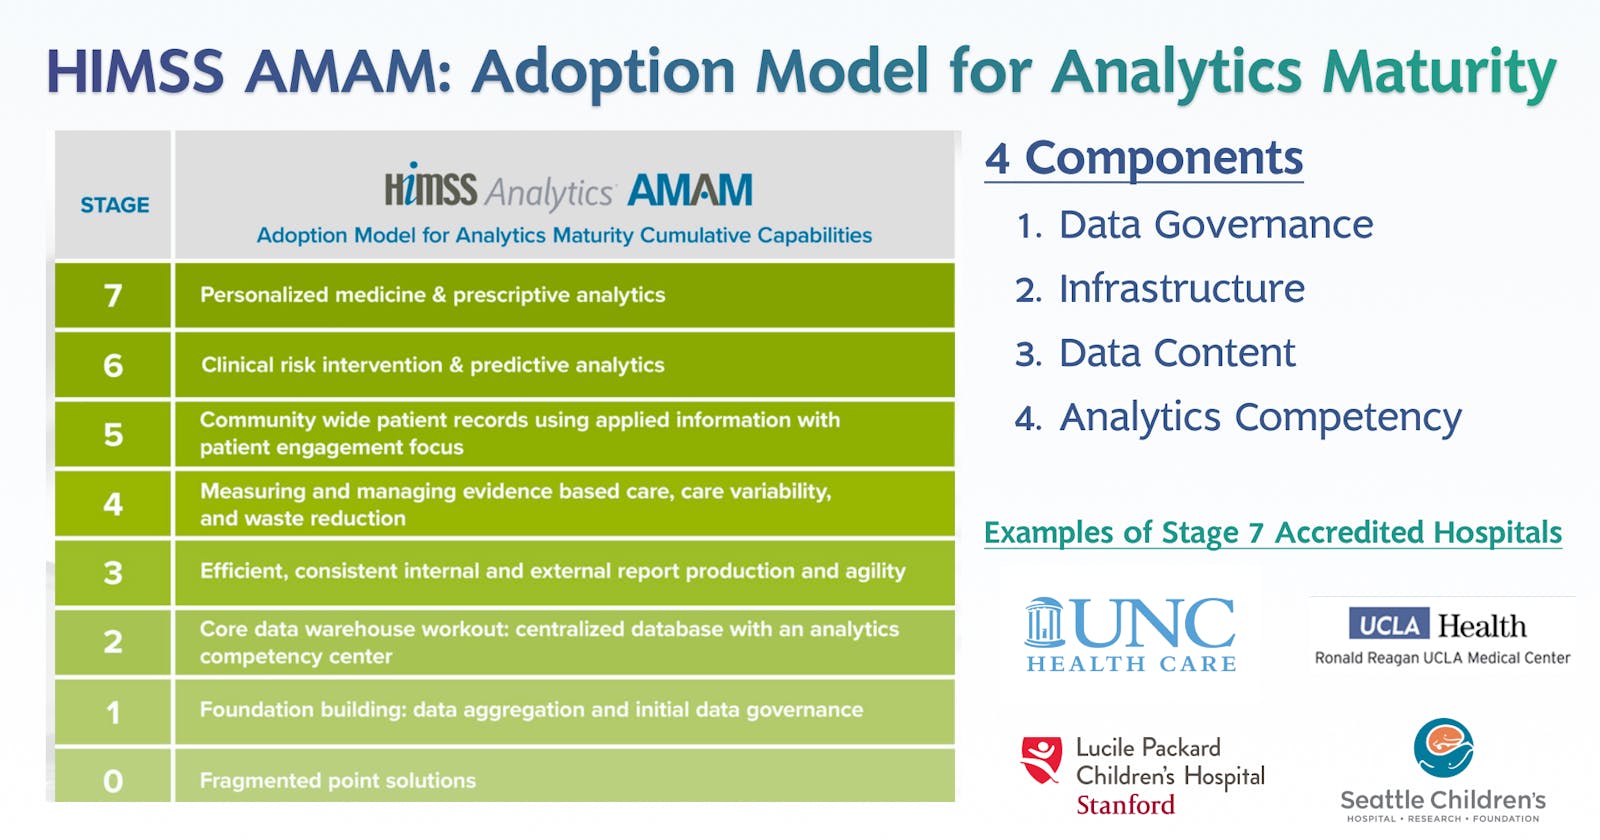 วางแนวทางพัฒนาการวิเคราะห์ข้อมูลในโรงพยาบาลด้วย Adoption Model for Analytics Maturity